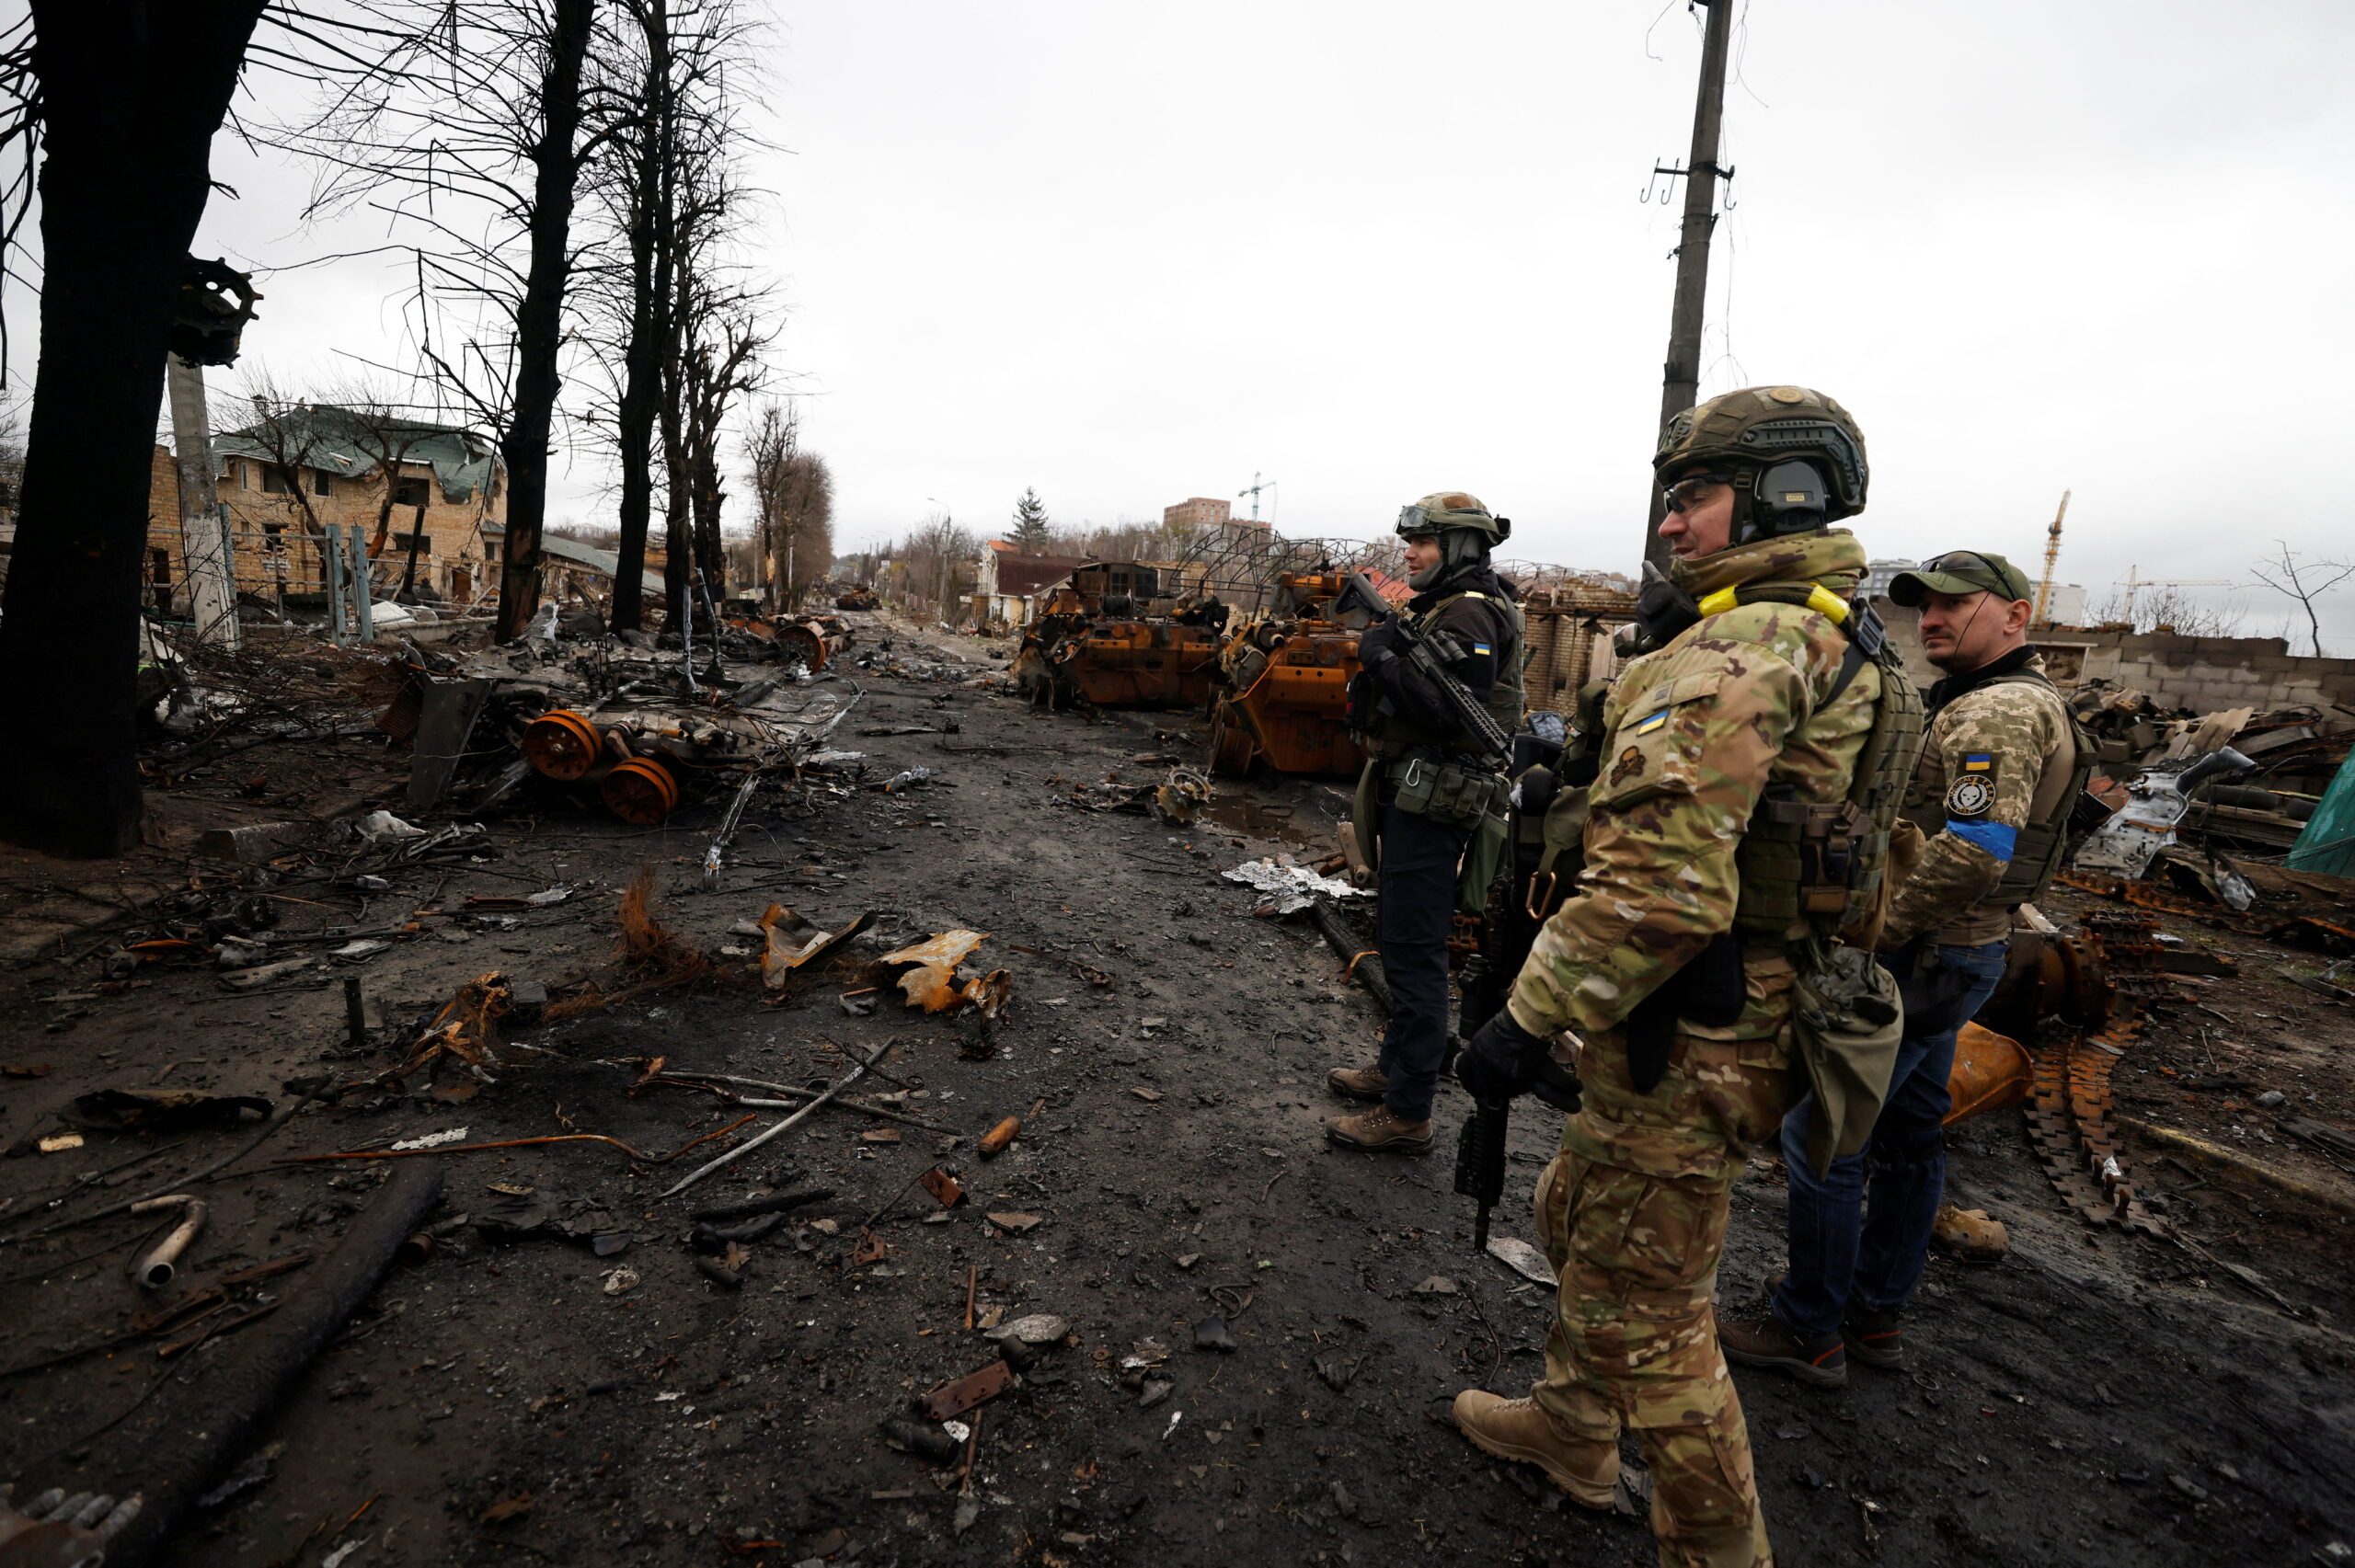 EU accuses Russian troops of committing atrocities in Ukrainian town Bucha